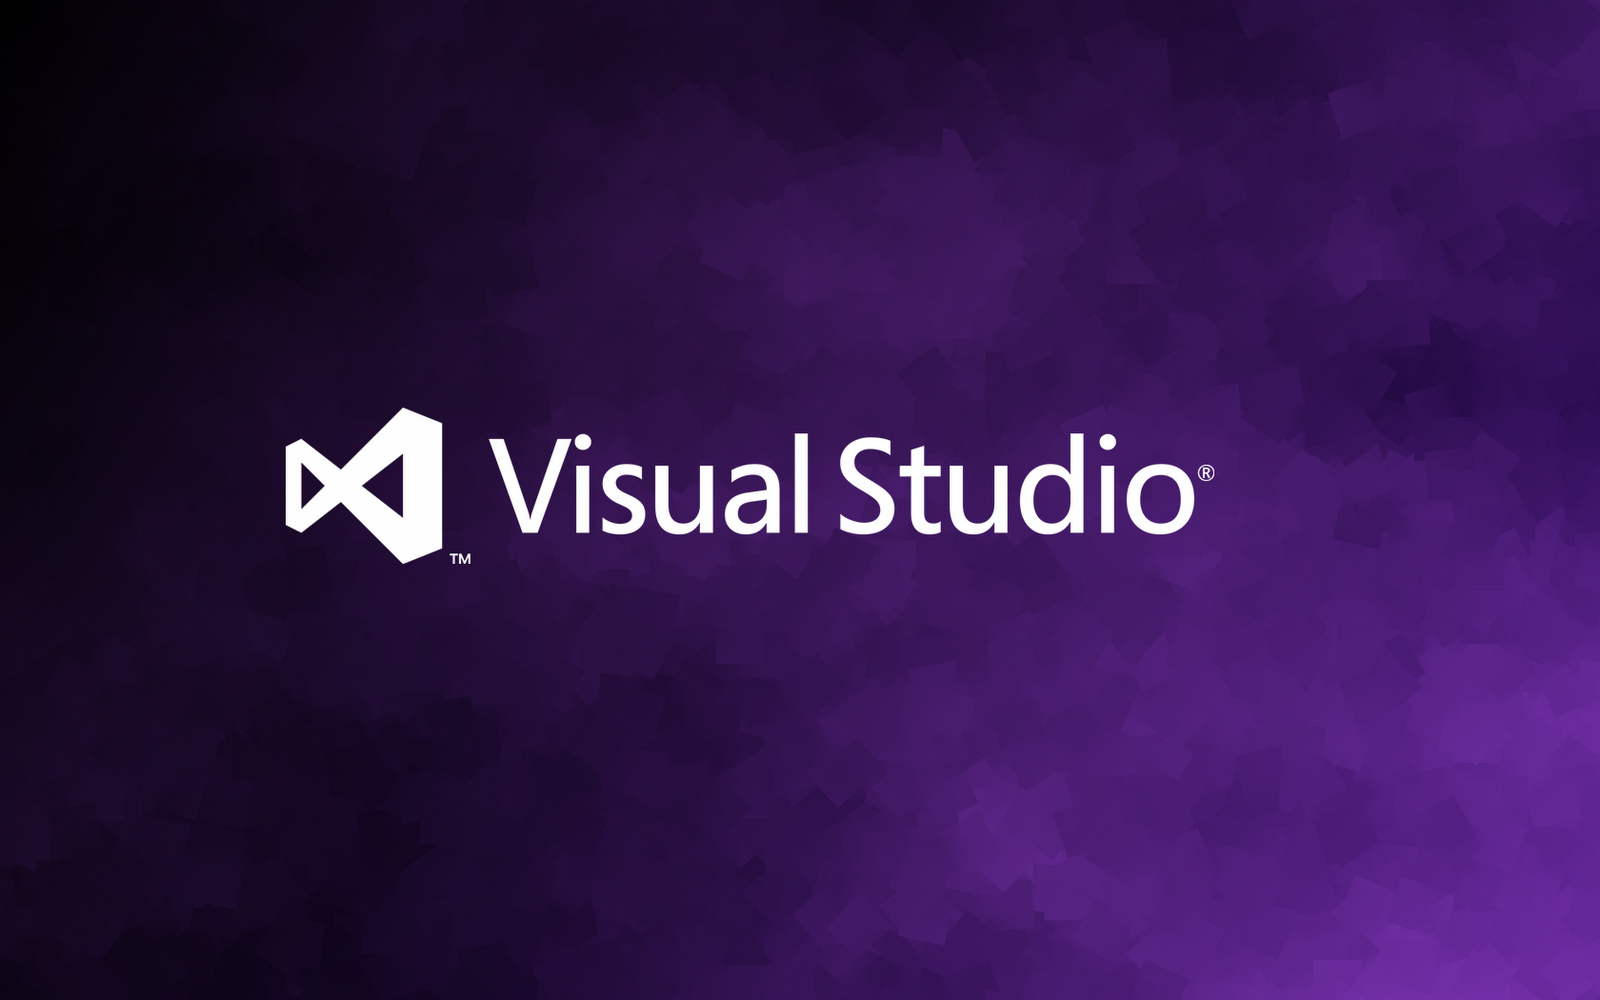 visual studio wallpaper,text,violet,purple,font,sky